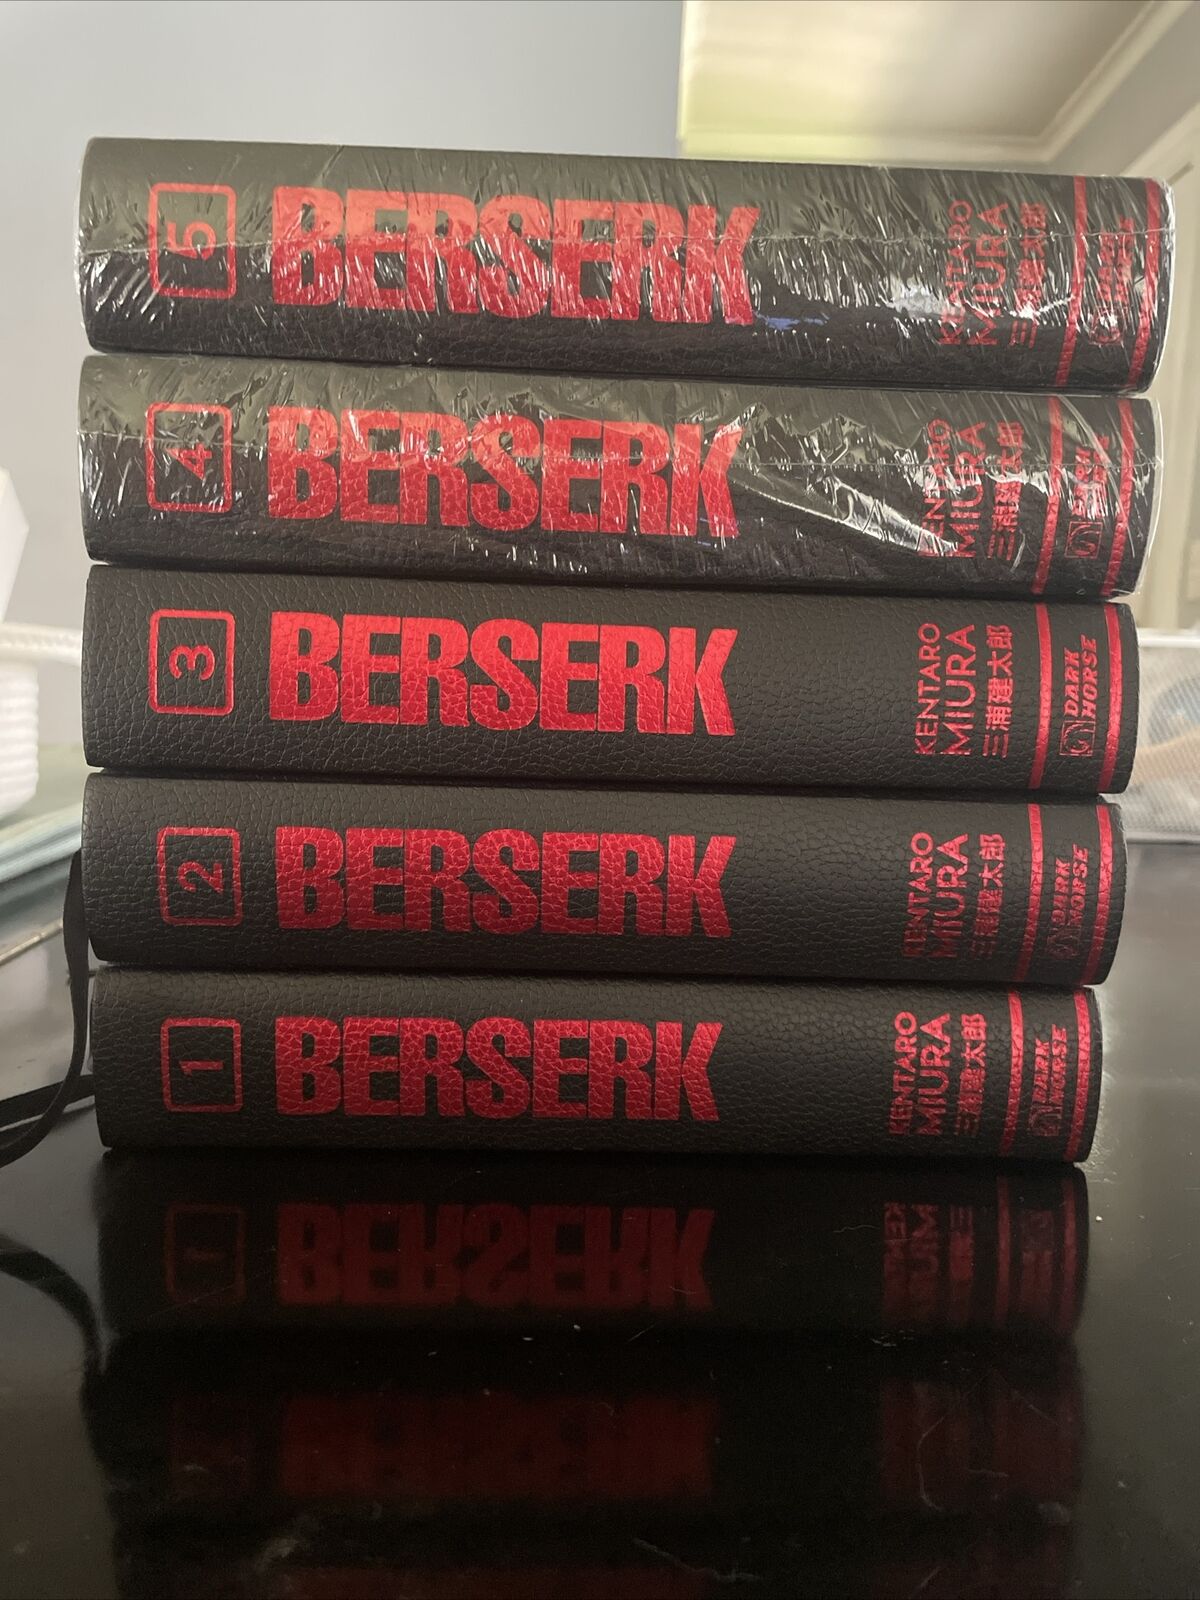 Berserk Deluxe Edition Volumes 1-5